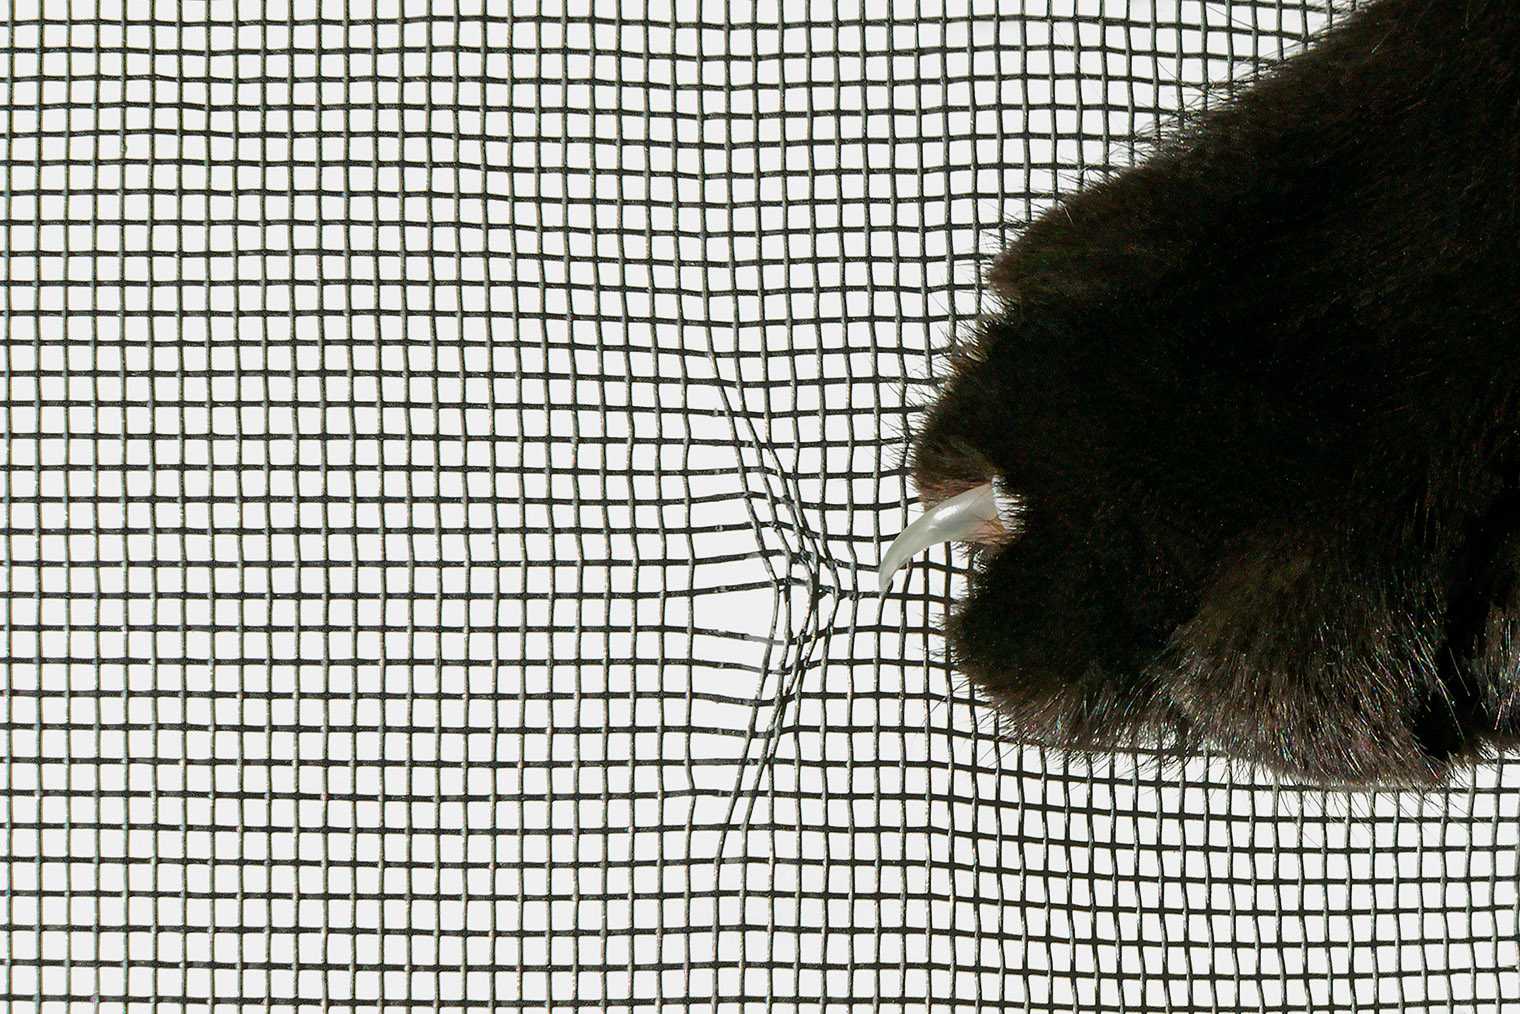 Москитная сетка тонкая и непрочная. Она хорошо защищает от насекомых, но не защитит питомца от падения. Фотография: Uesiba / Shutterstock / FOTODOM